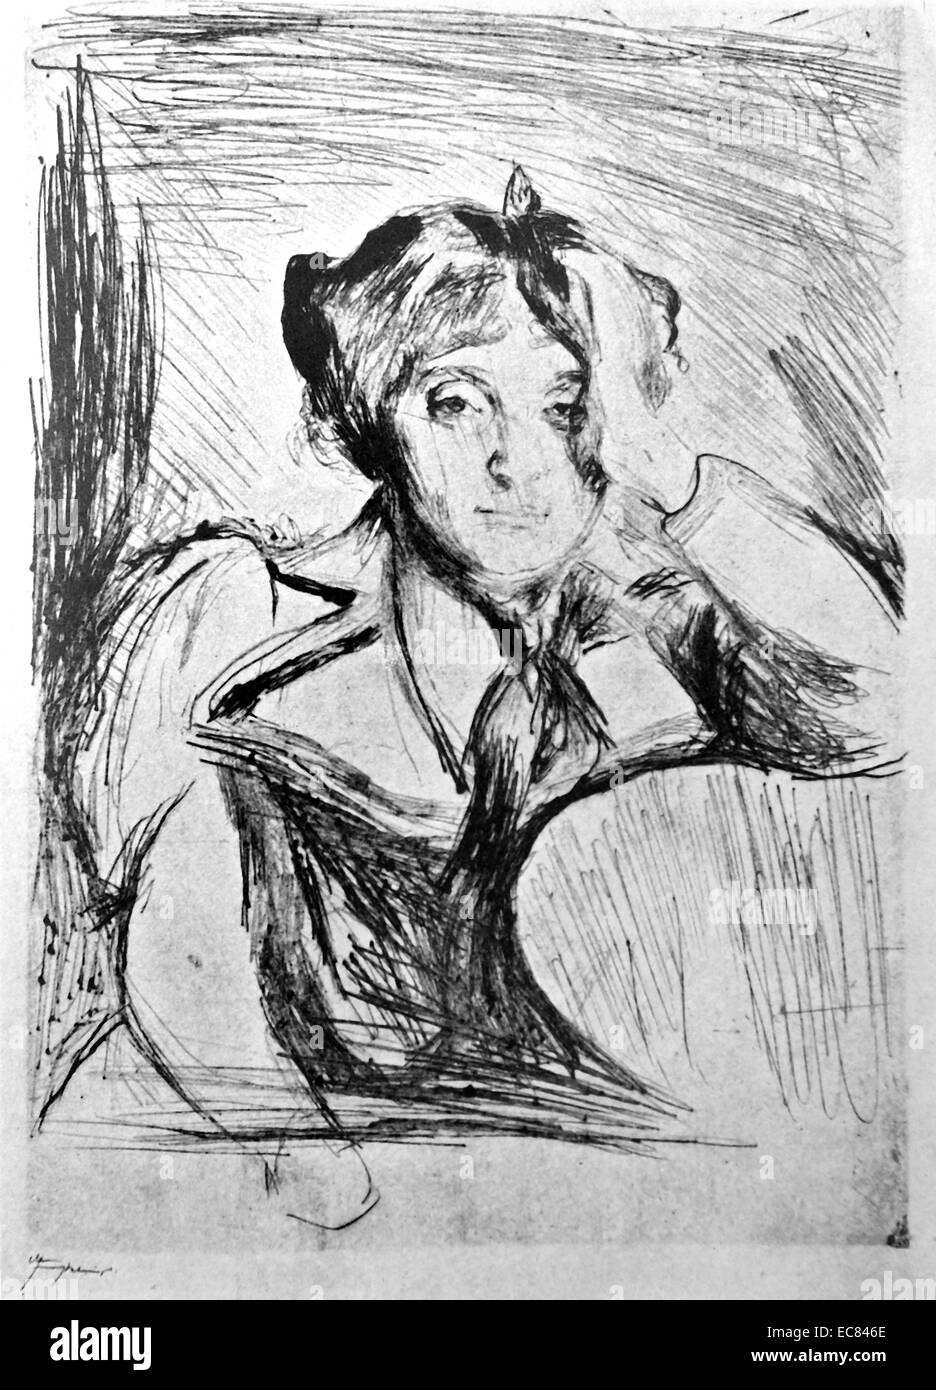 Portrait d'une femme. Avant de l'Amérique. Par l'artiste norvégien Edvard Munch (1863-1944). Cette œuvre a été réalisée en 1893. Banque D'Images